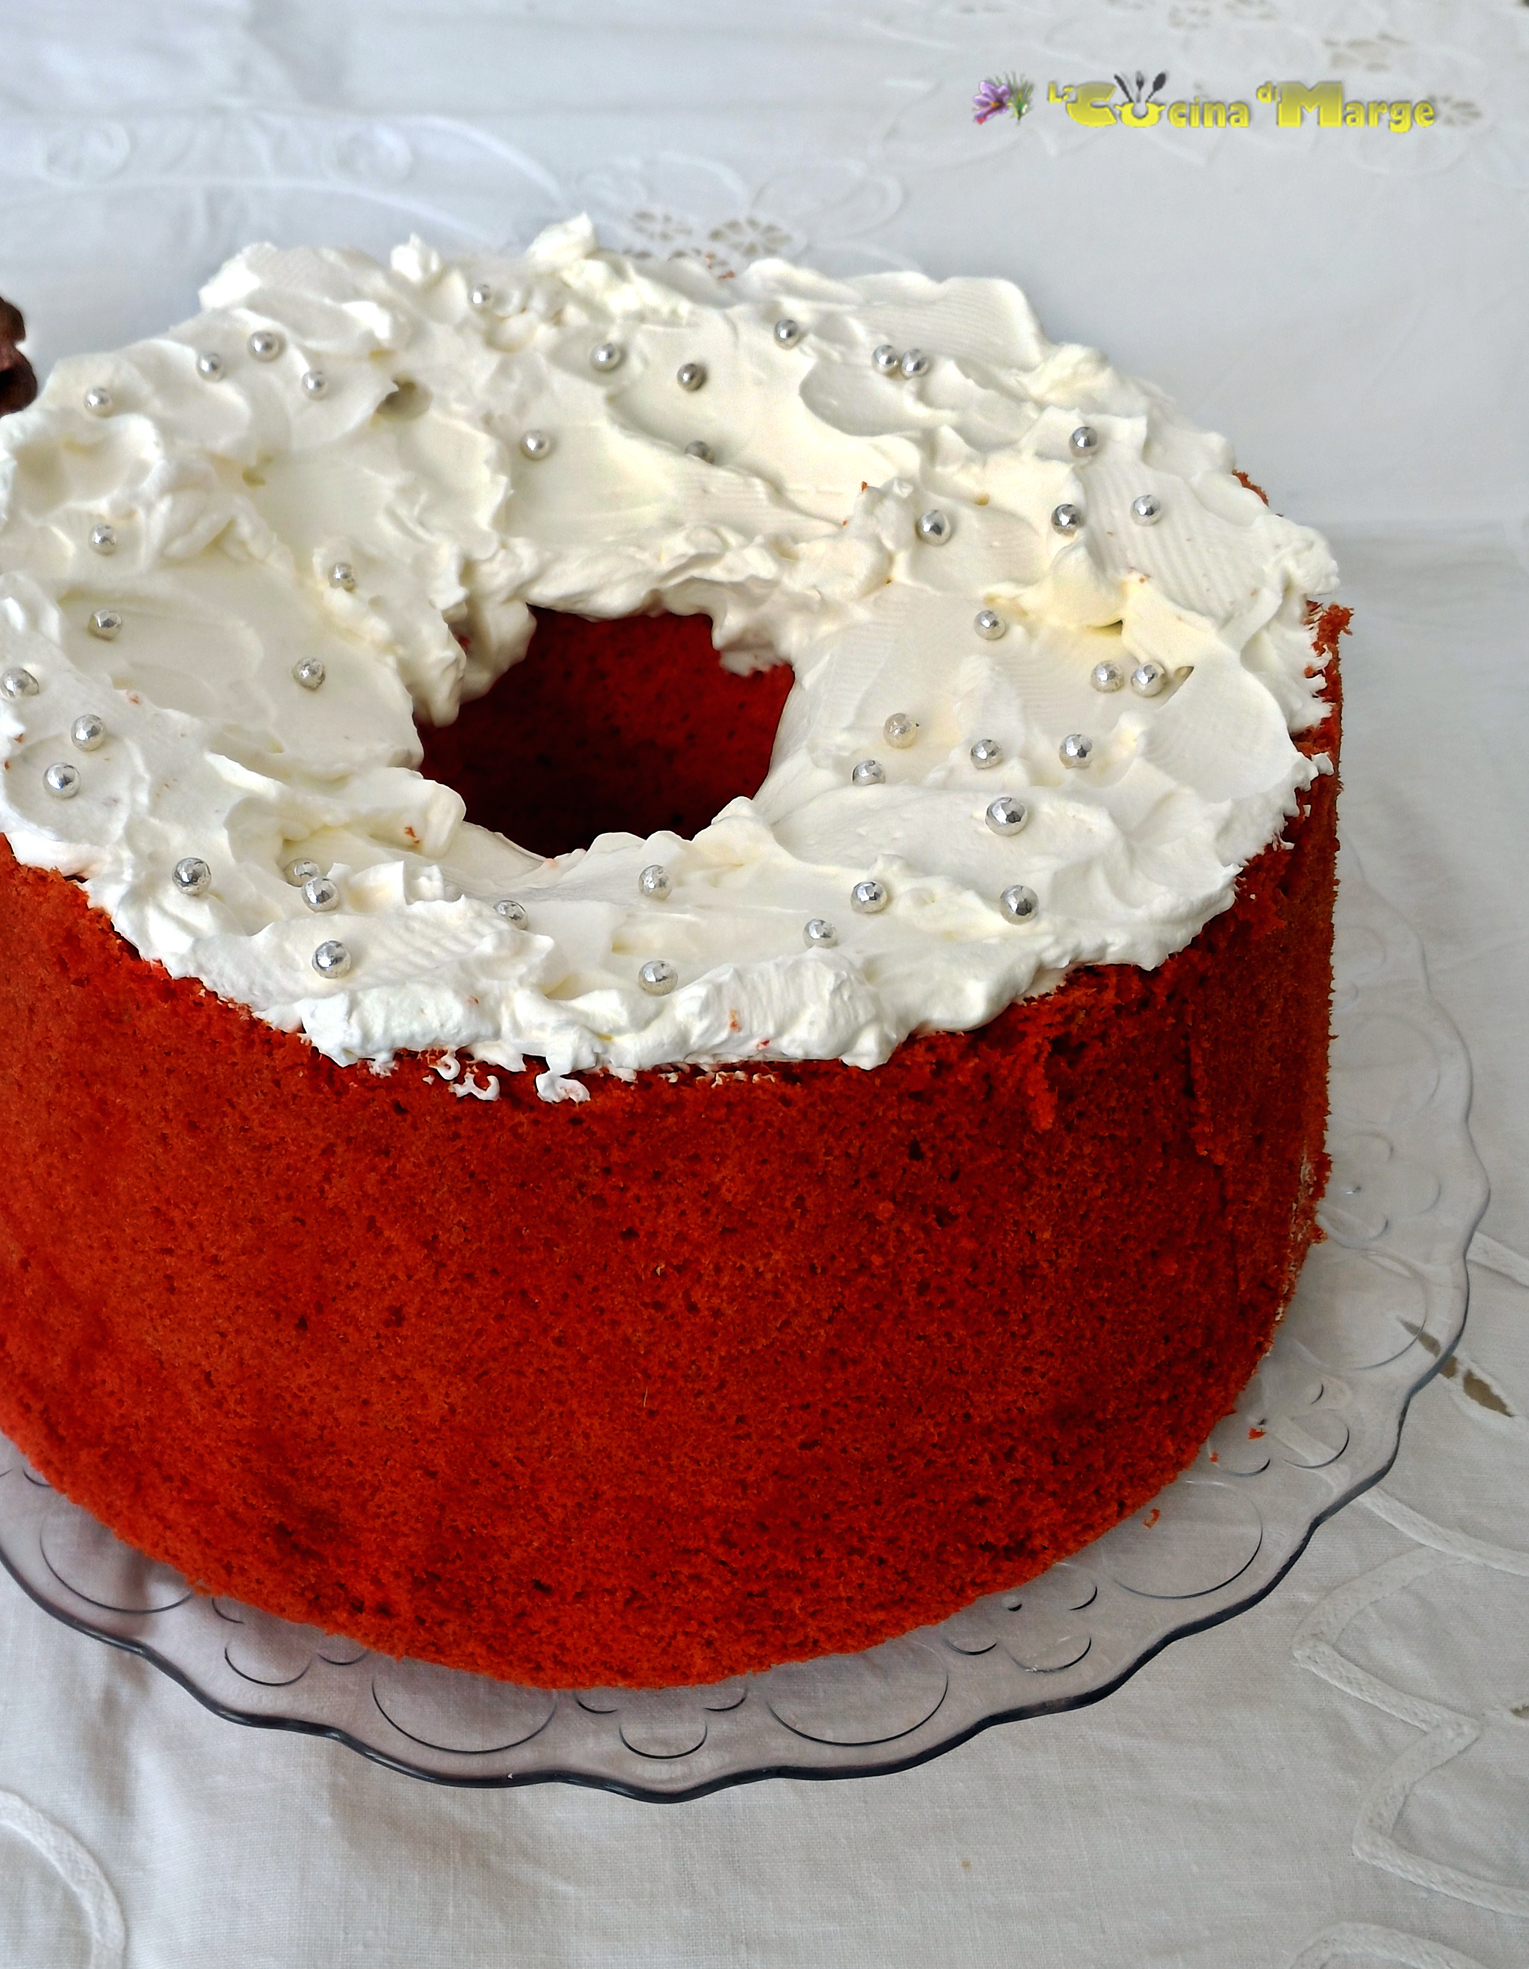 RED VELVET CHIFFON CAKE